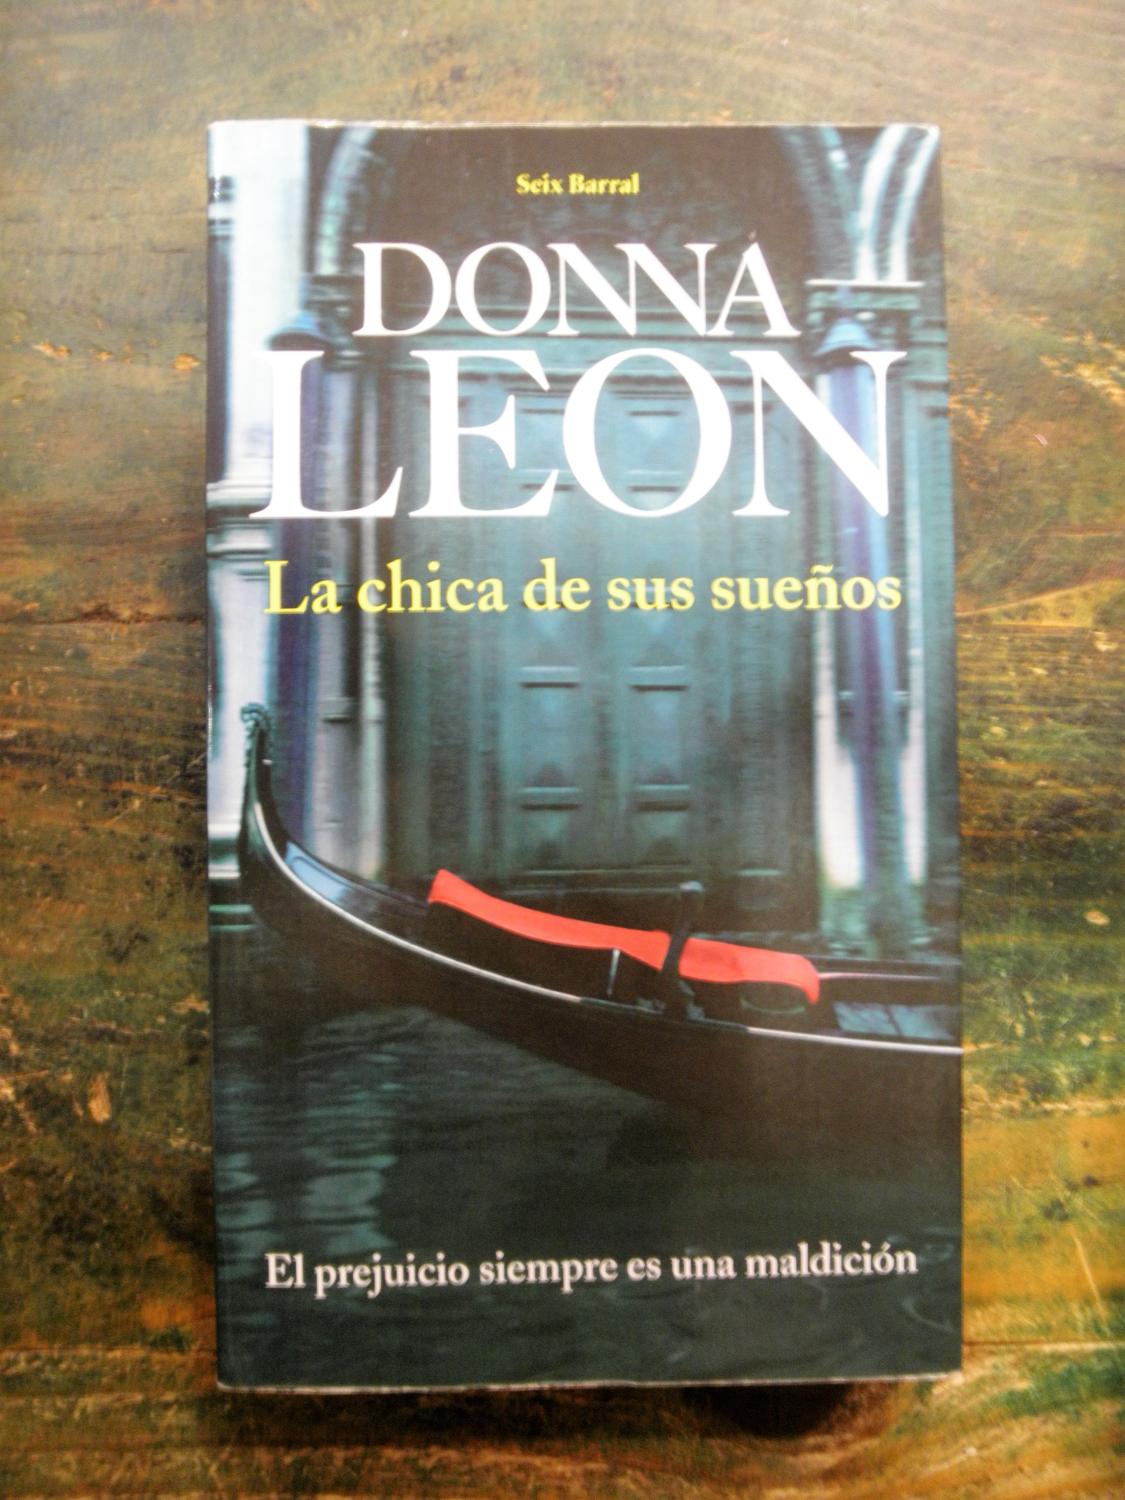 La chica de sus sueños - Leon, Donna